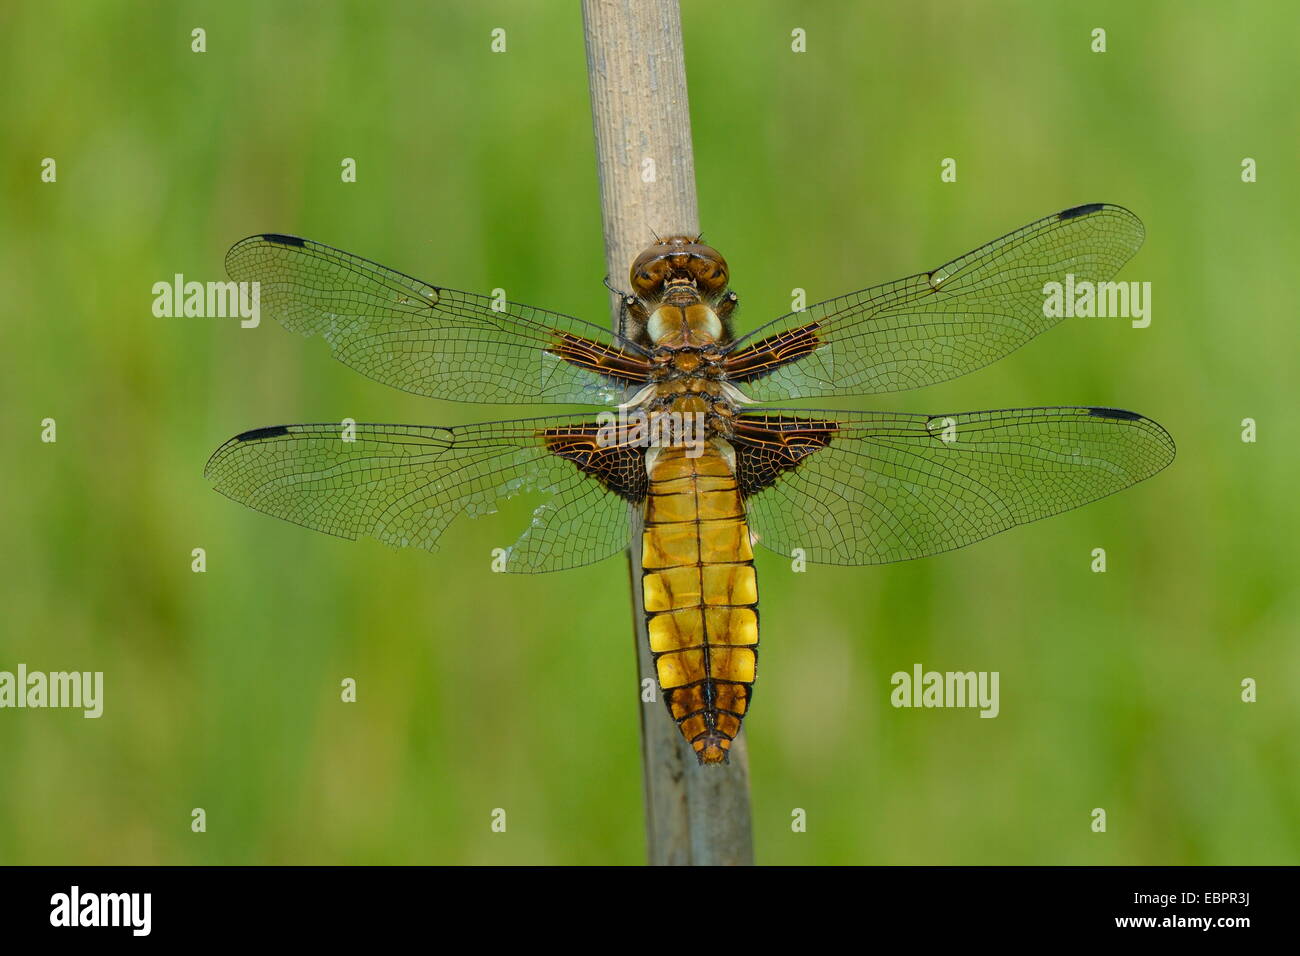 Hembra de cuerpo amplio chaser dragonfly (Libellula depressa) con un ala lesionada descansando sobre una caña de tallo, Wiltshire, Inglaterra, Reino Unido. Foto de stock